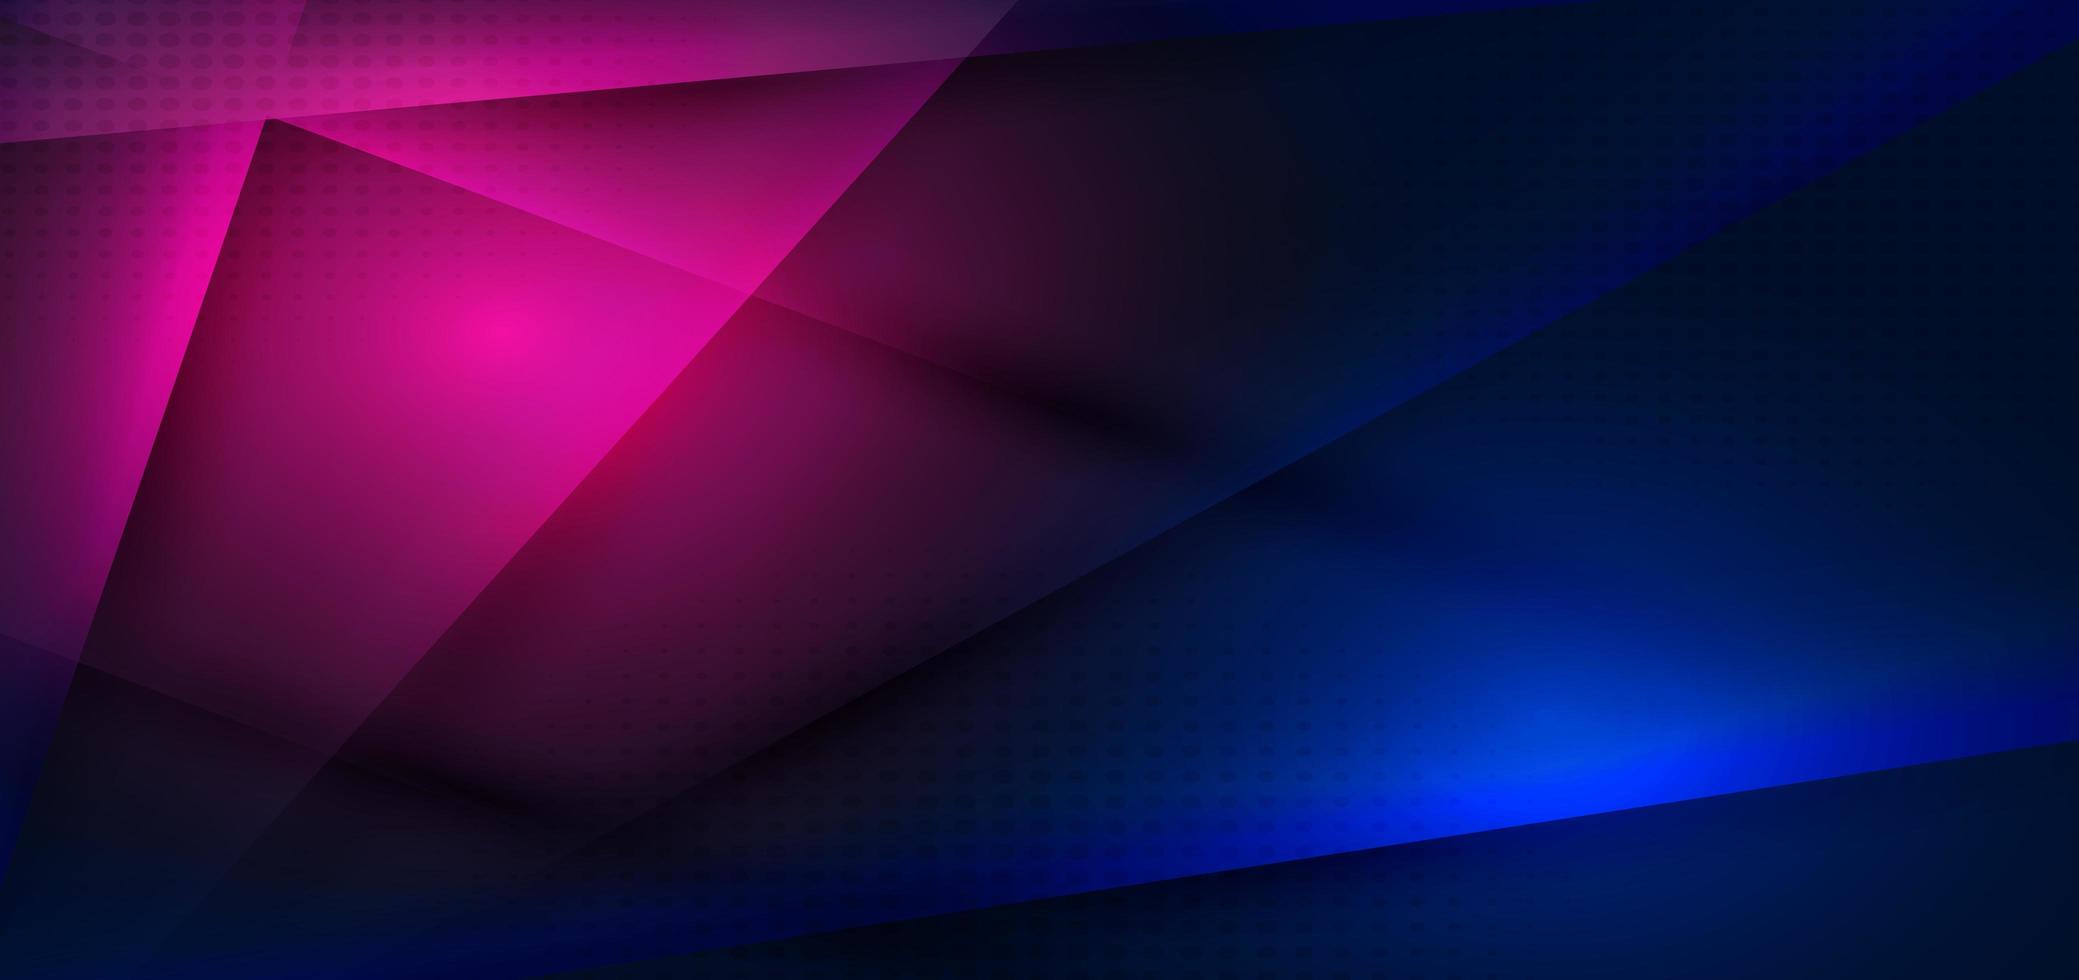 abstrait technologie concept triangle bleu et rose fond sombre. vecteur